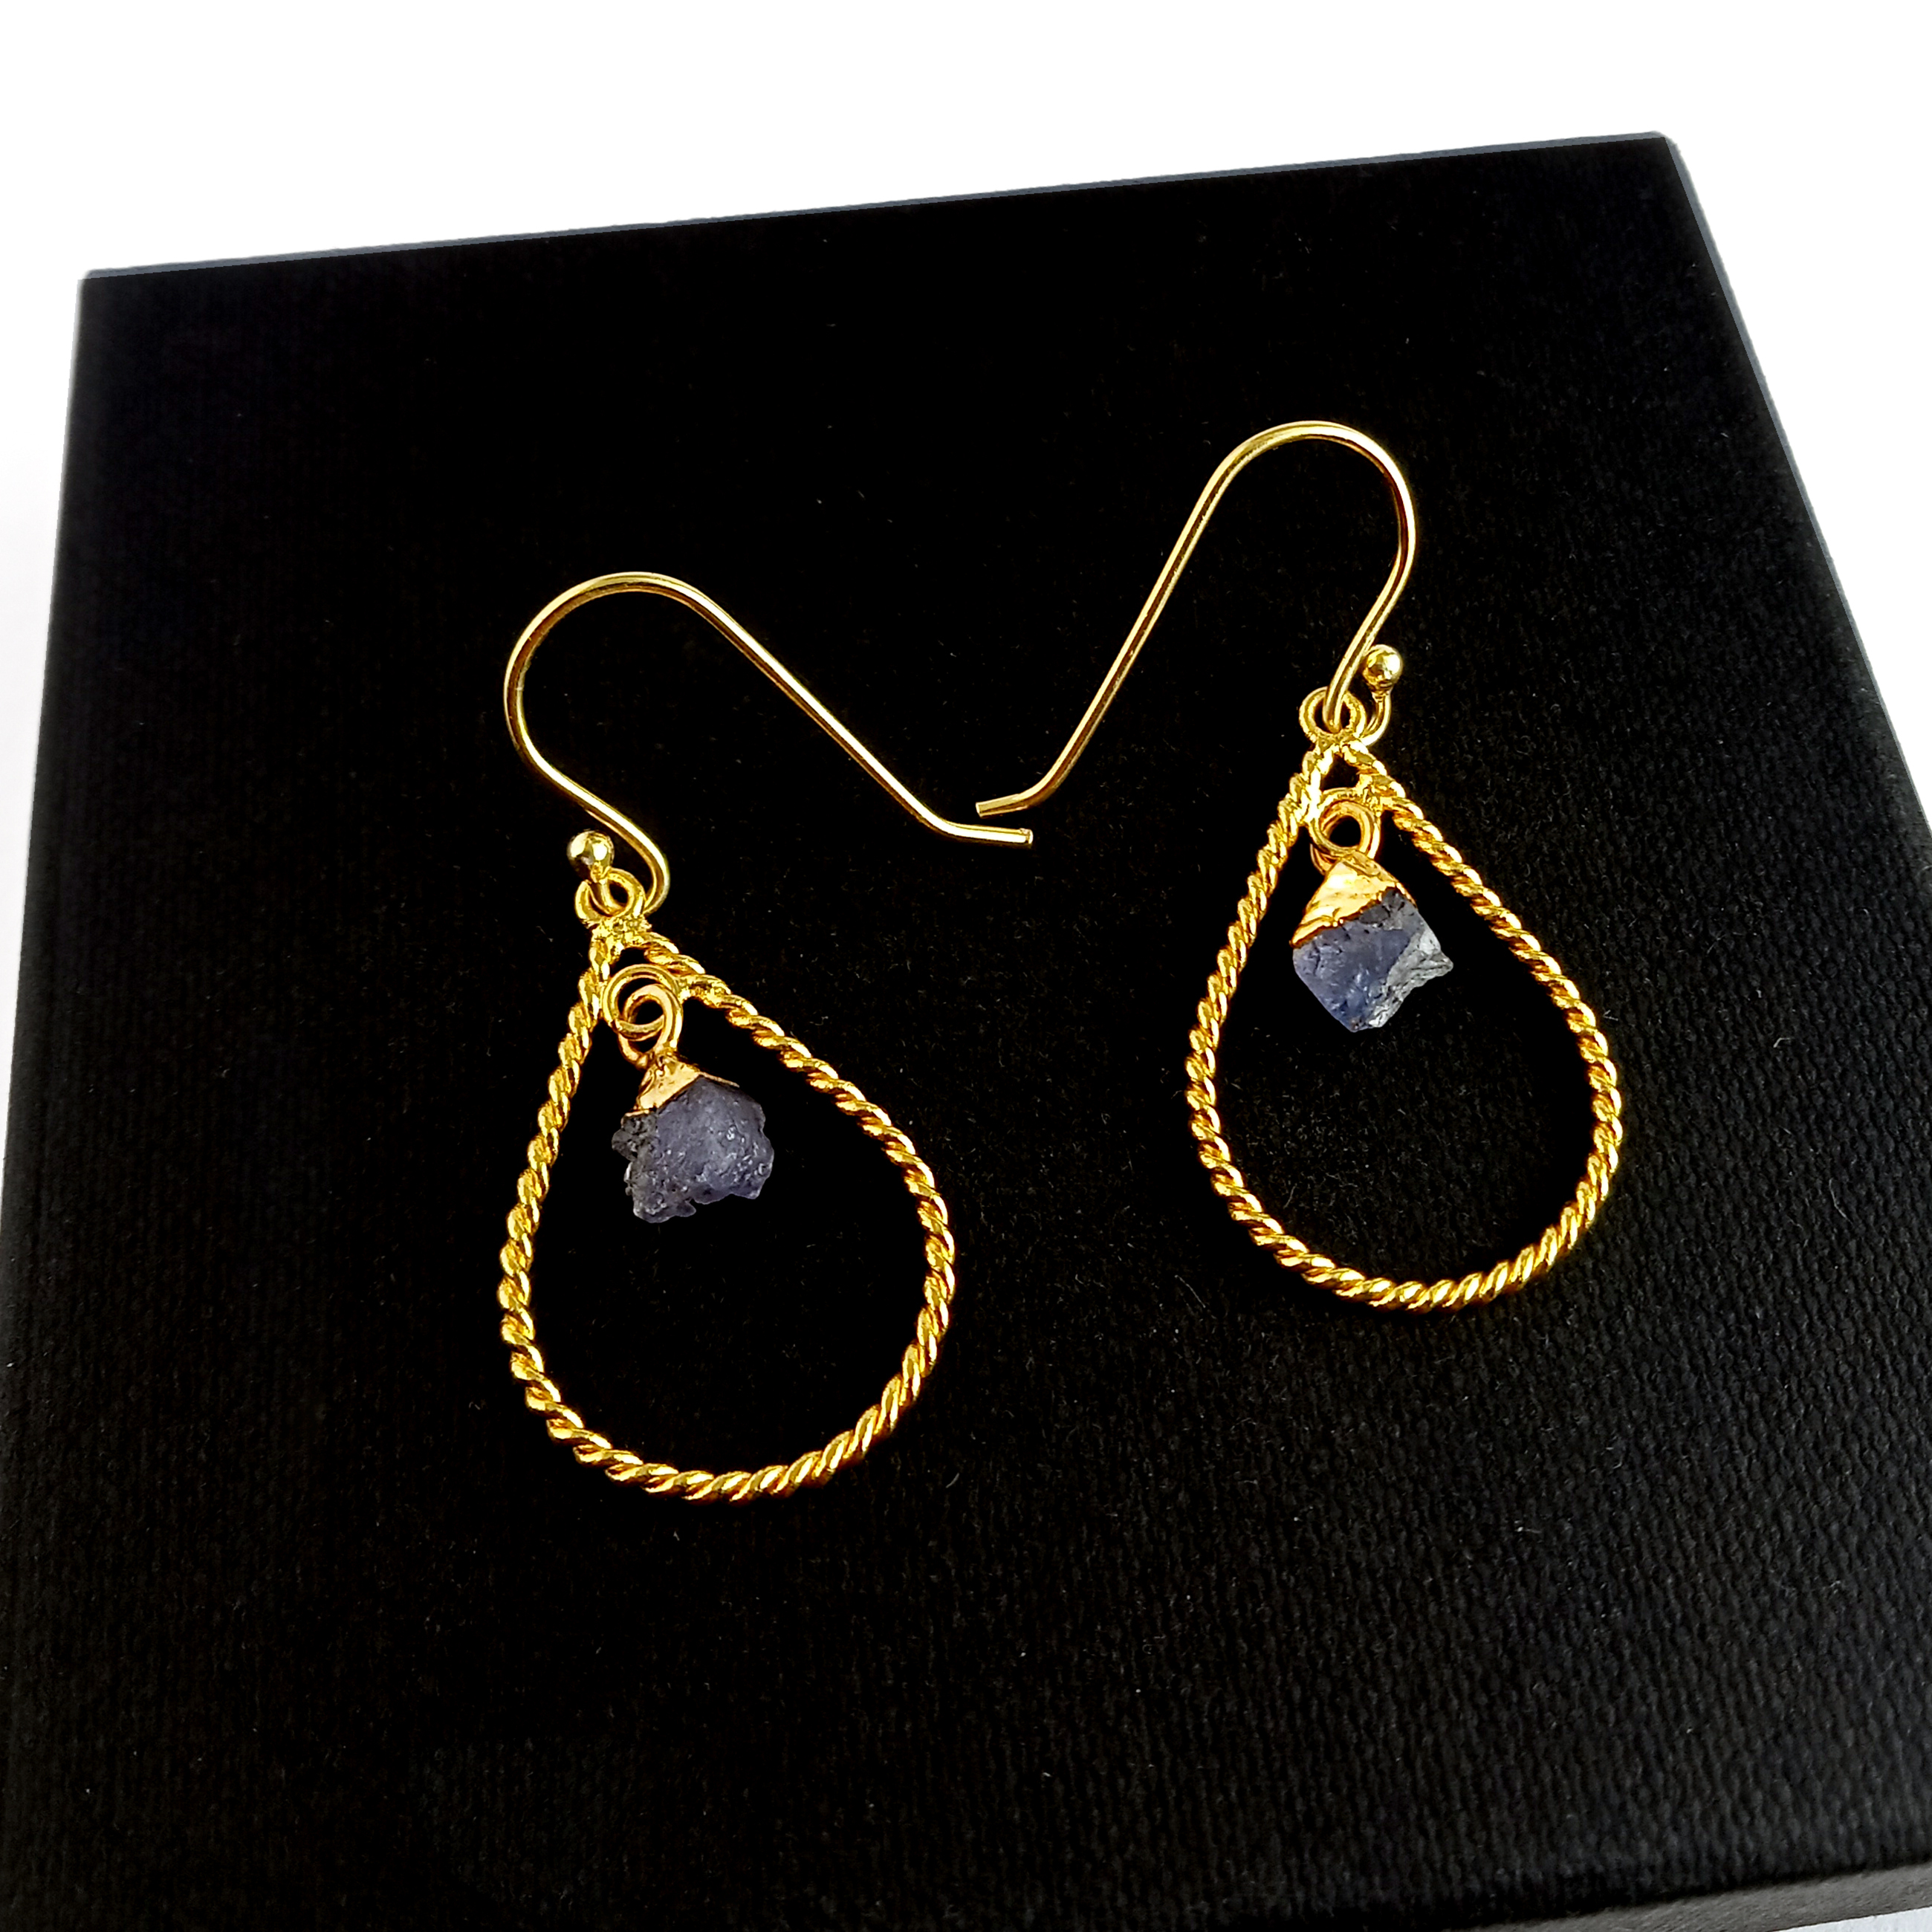 Crystal Raw Twisted Wire Teardrop Shape Earrings Gift For Mom Gold Plated Gemstone Earrings Drop Dangle Gemstone Earrings